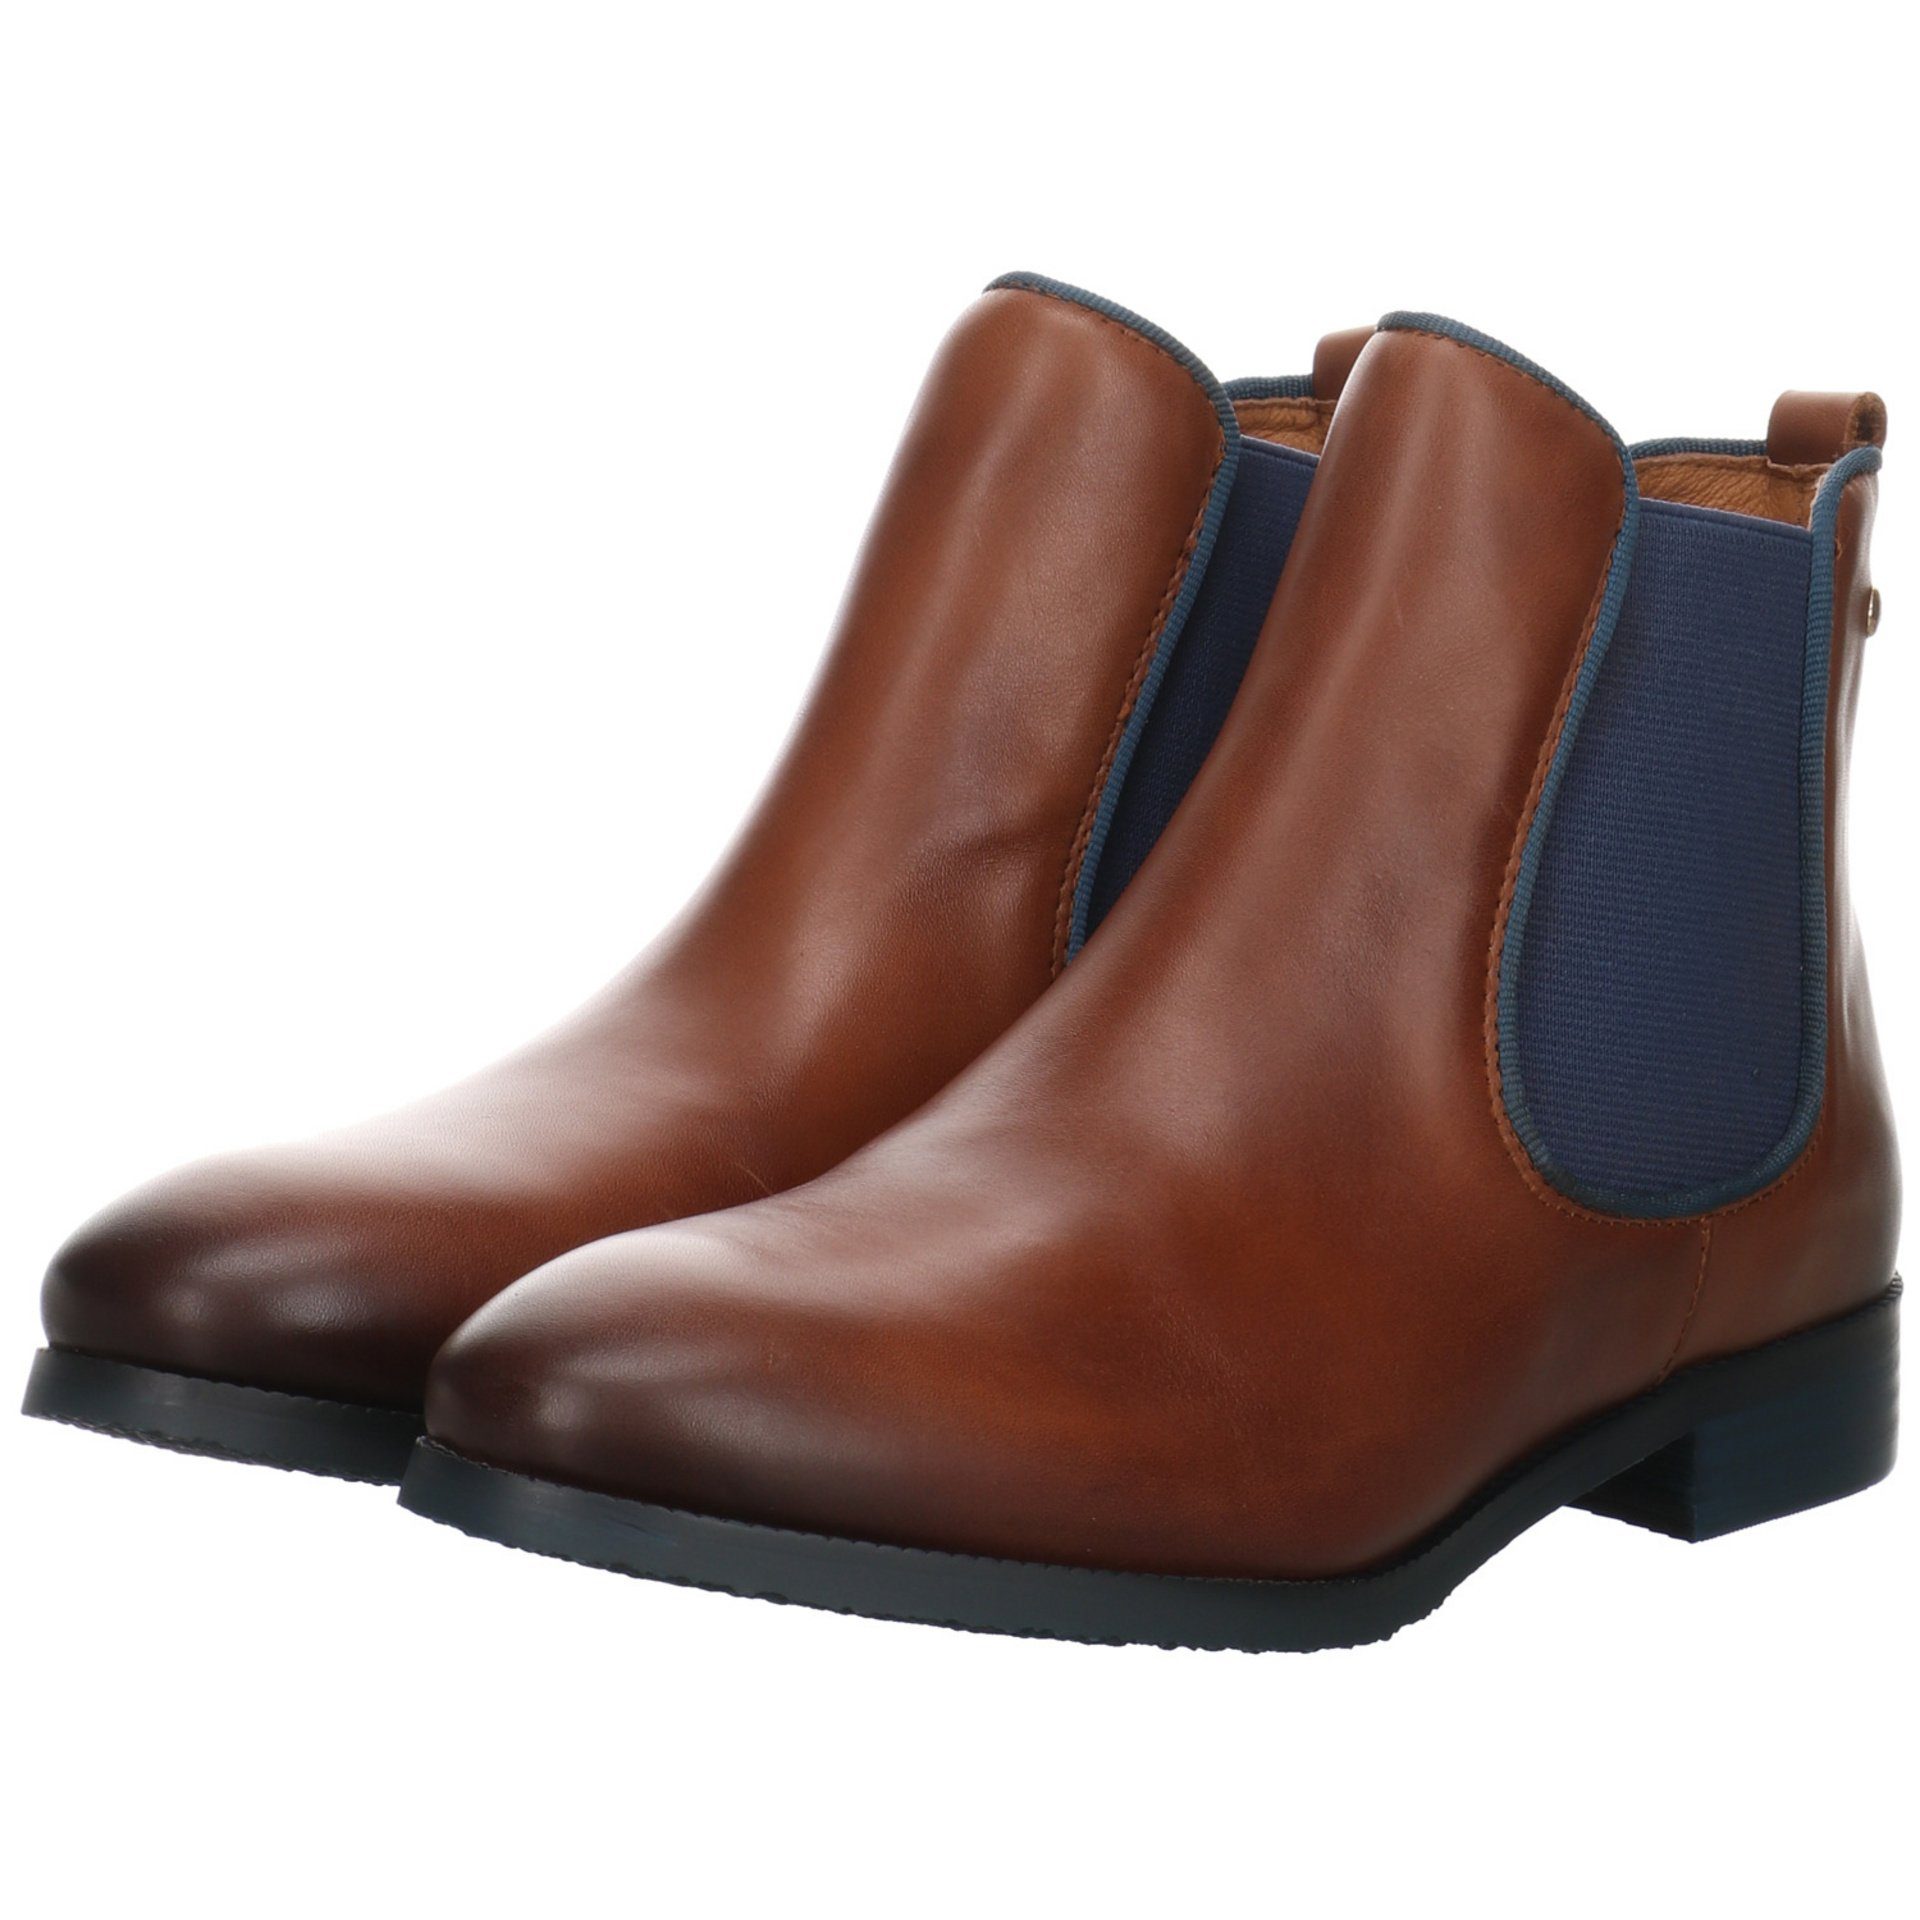 Boots Schuhe Stiefeletten Damen Royal Leder-/Textilkombination Stiefelette Chelsea Braun PIKOLINOS